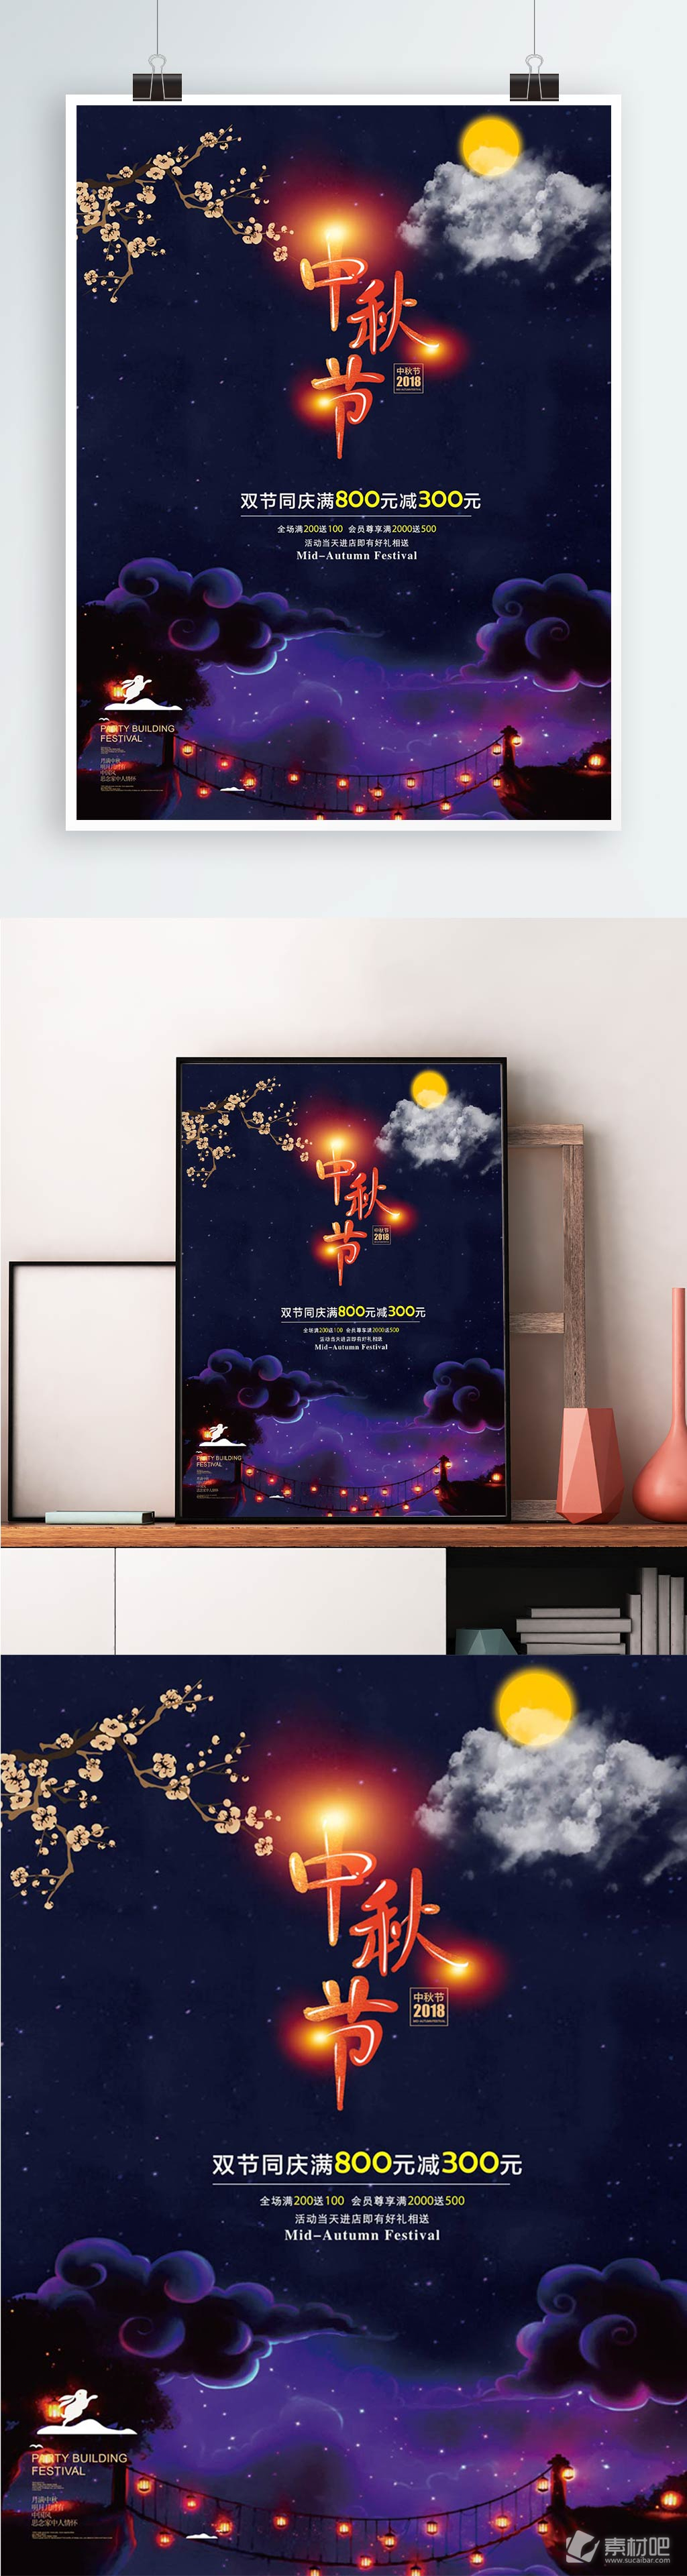 唯美简约深色背景紫色中秋节宣传海报设计